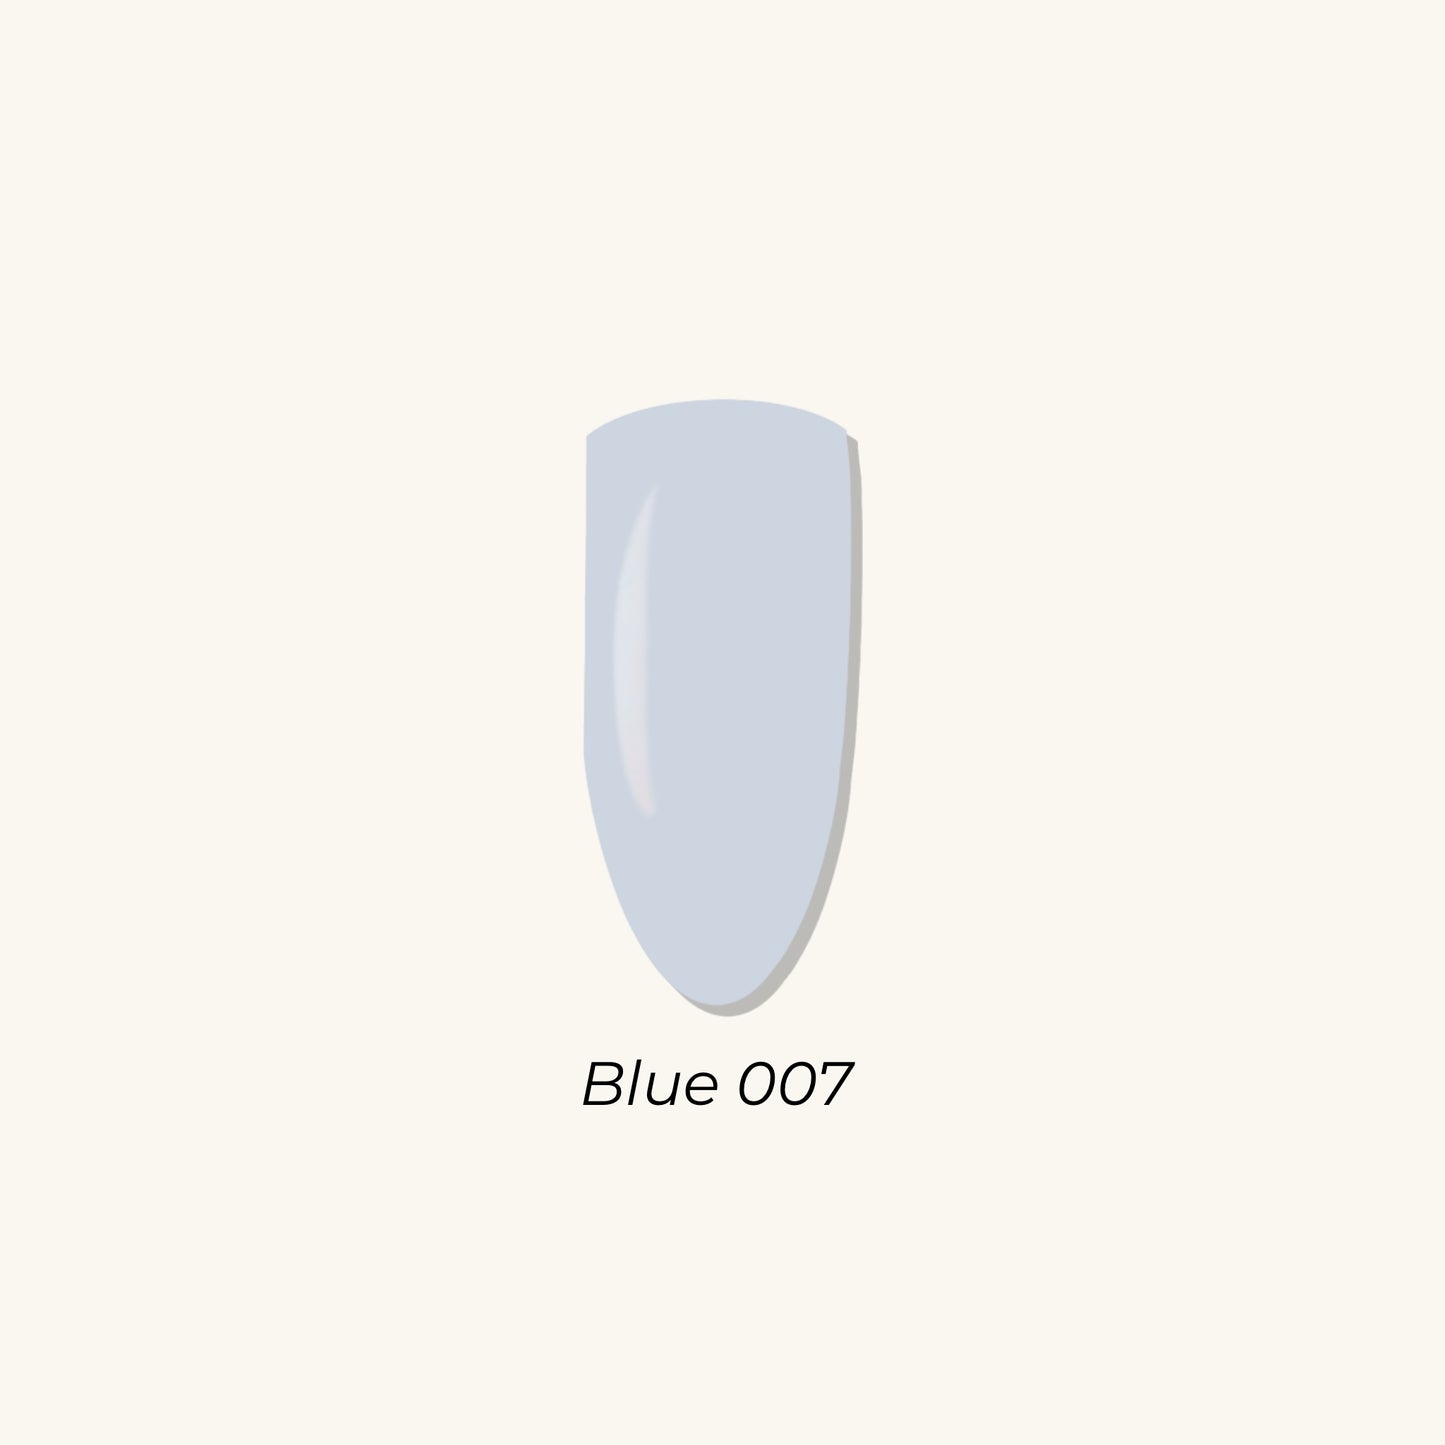 Blue 007